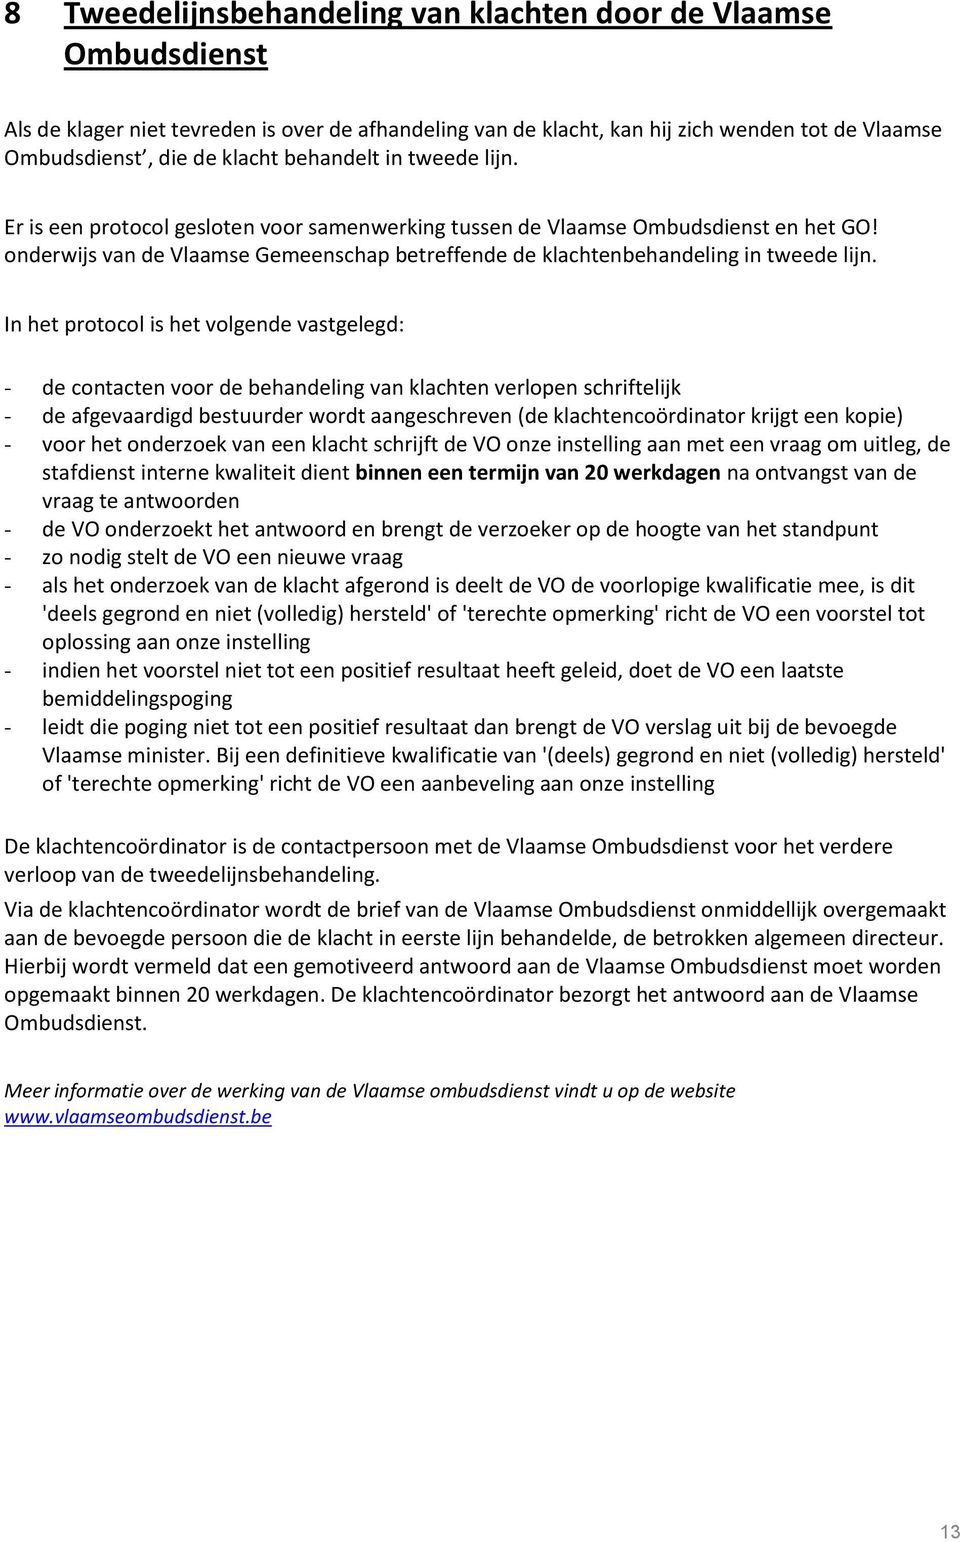 onderwijs van de Vlaamse Gemeenschap betreffende de klachtenbehandeling in tweede lijn.